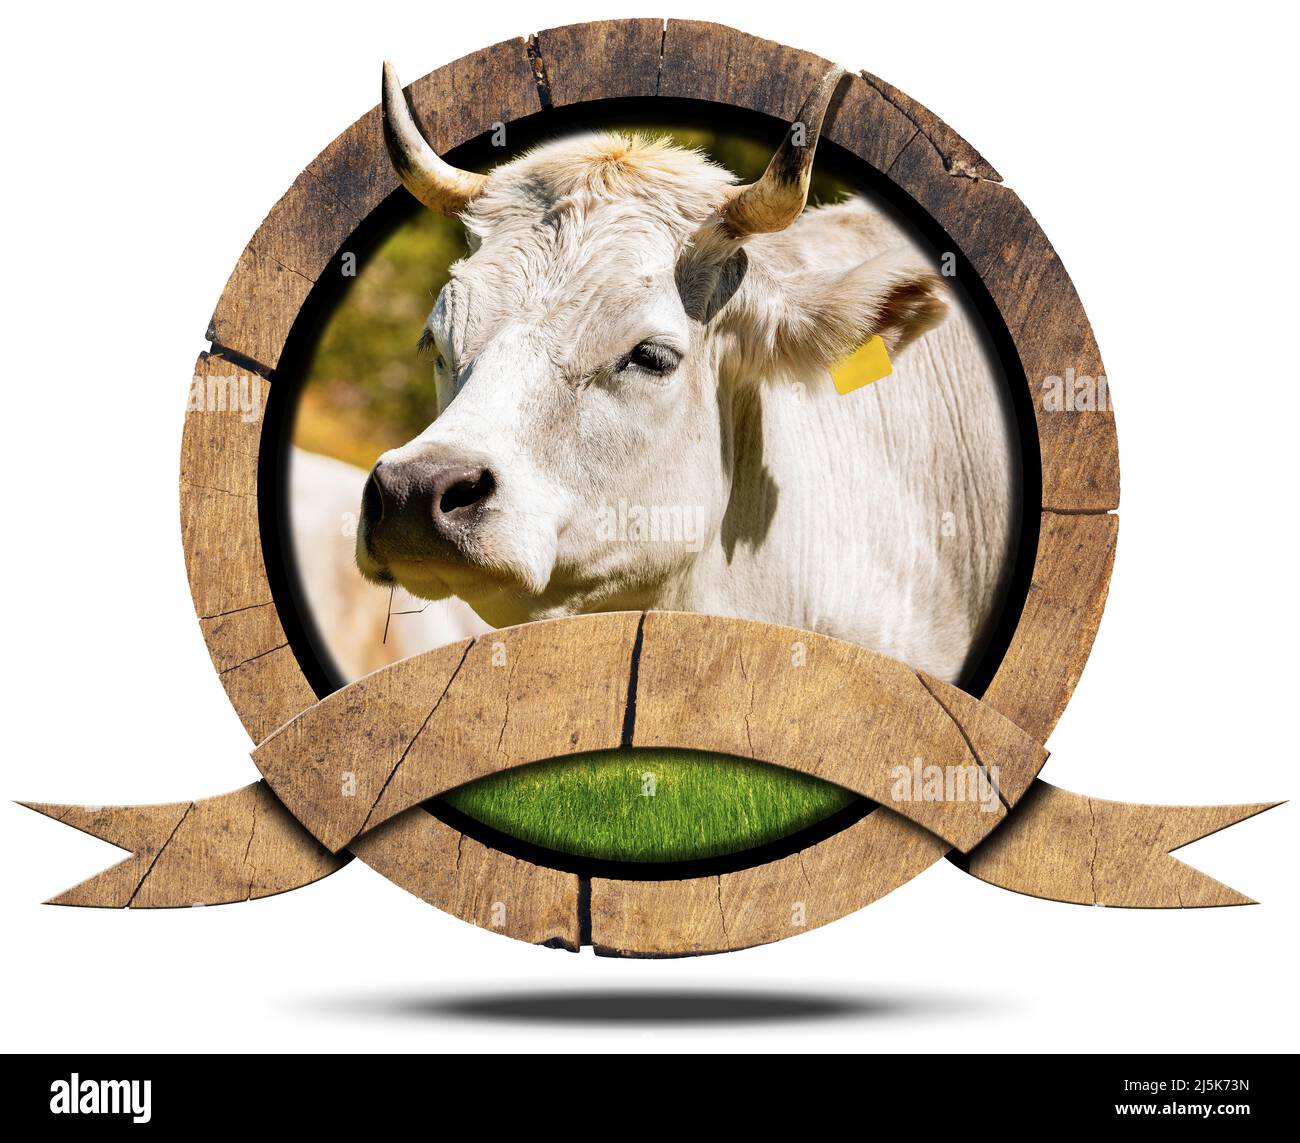 Segno rotondo di legno o icona con una testa di una mucca bianca (giovenca) con corna e spazio copia. Isolato su sfondo bianco con ombra. Foto Stock